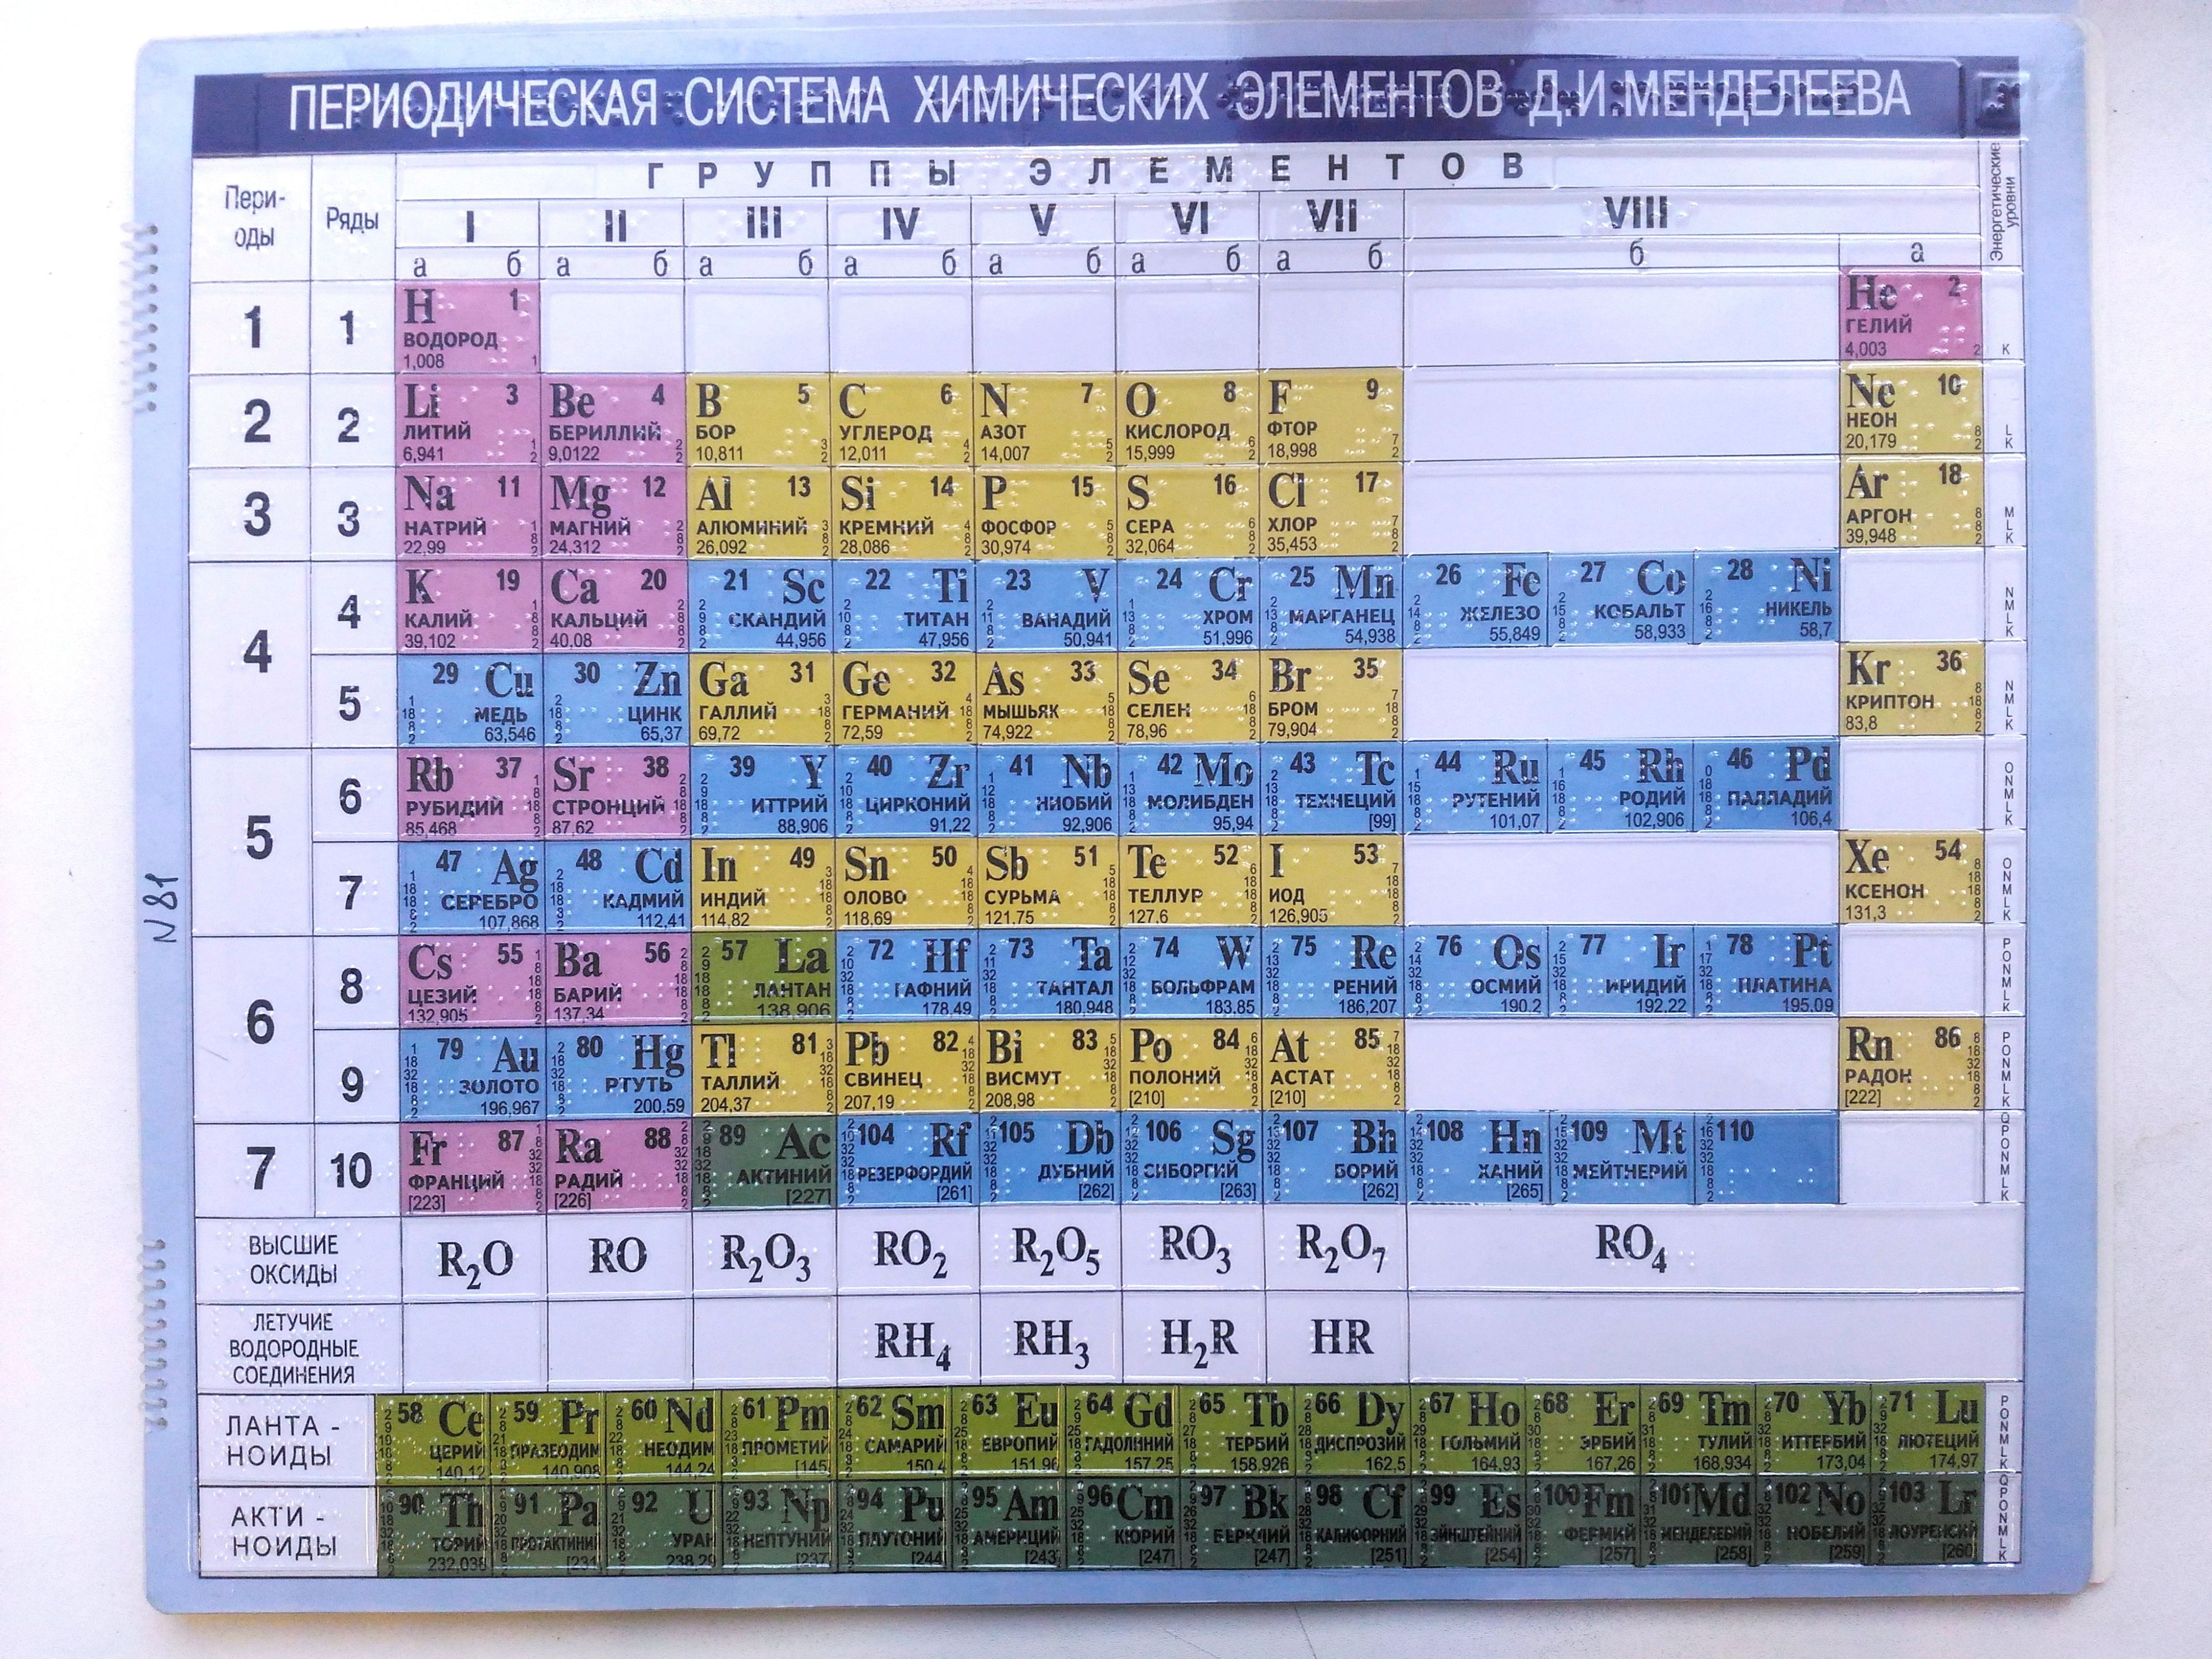 Бром цинк кальций. Периодическая система химических элементов д.и. Менделеева. Таблица по химии периодическая система химических элементов. Современная таблица Менделеева 118 элементов. 3 Элемент в периодической таблице Менделеева.